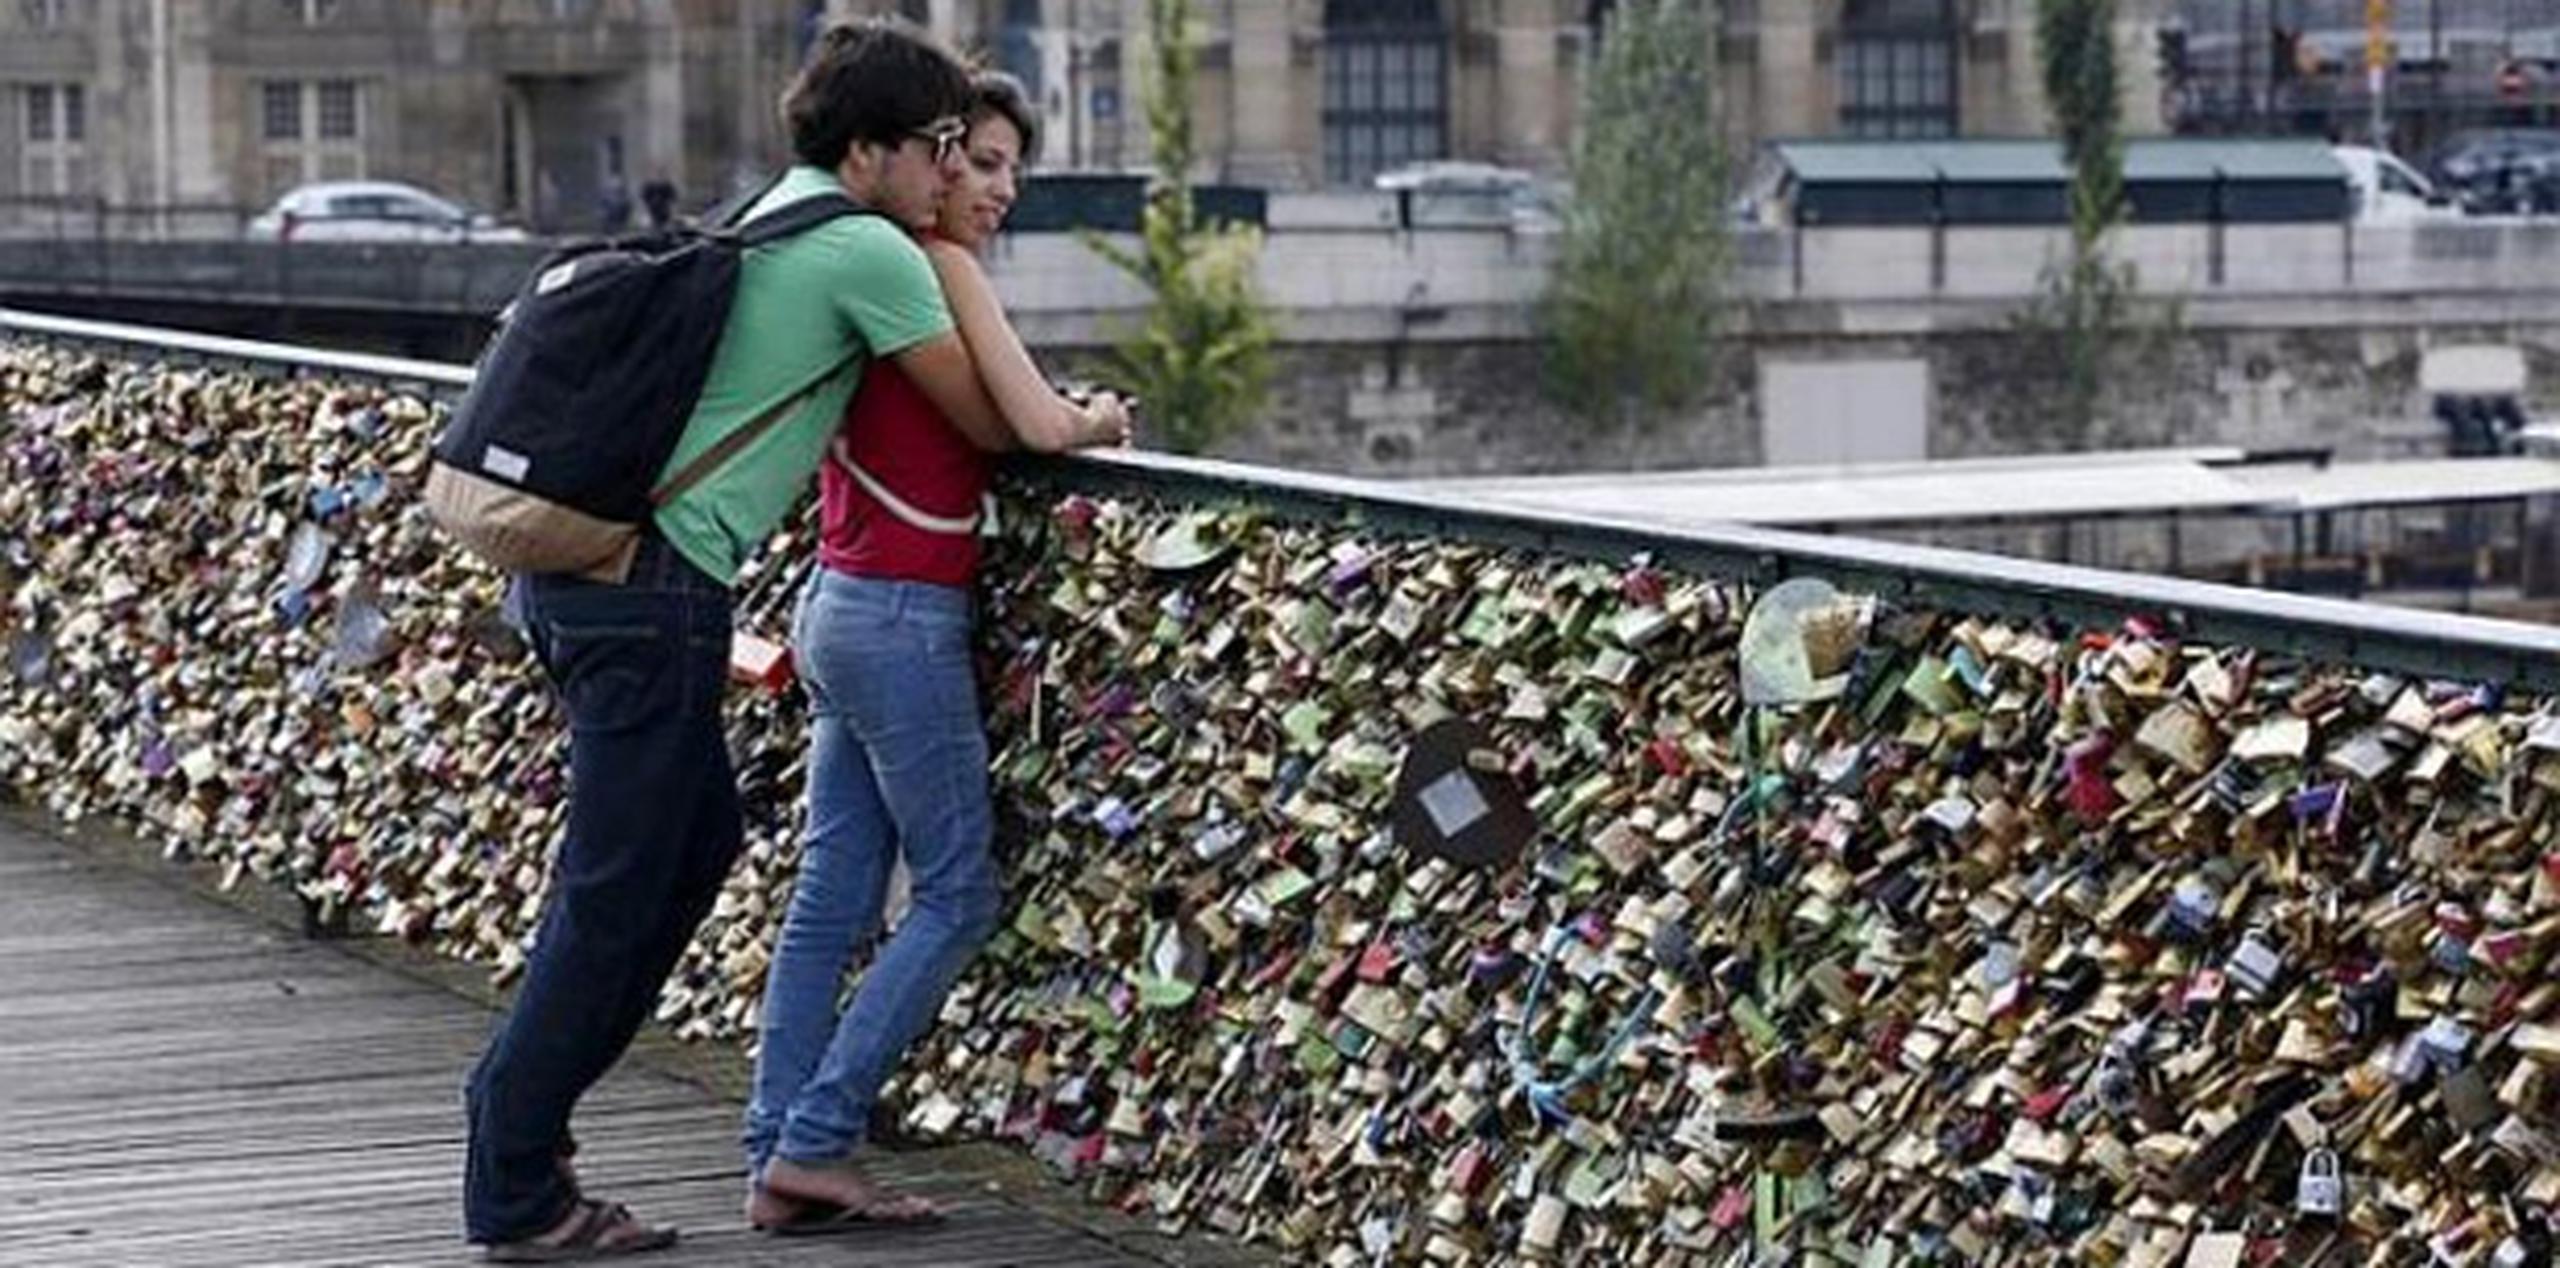 Los candados representan para muchos una monstruosidad en el puente más pintoresco de París. (AFP)